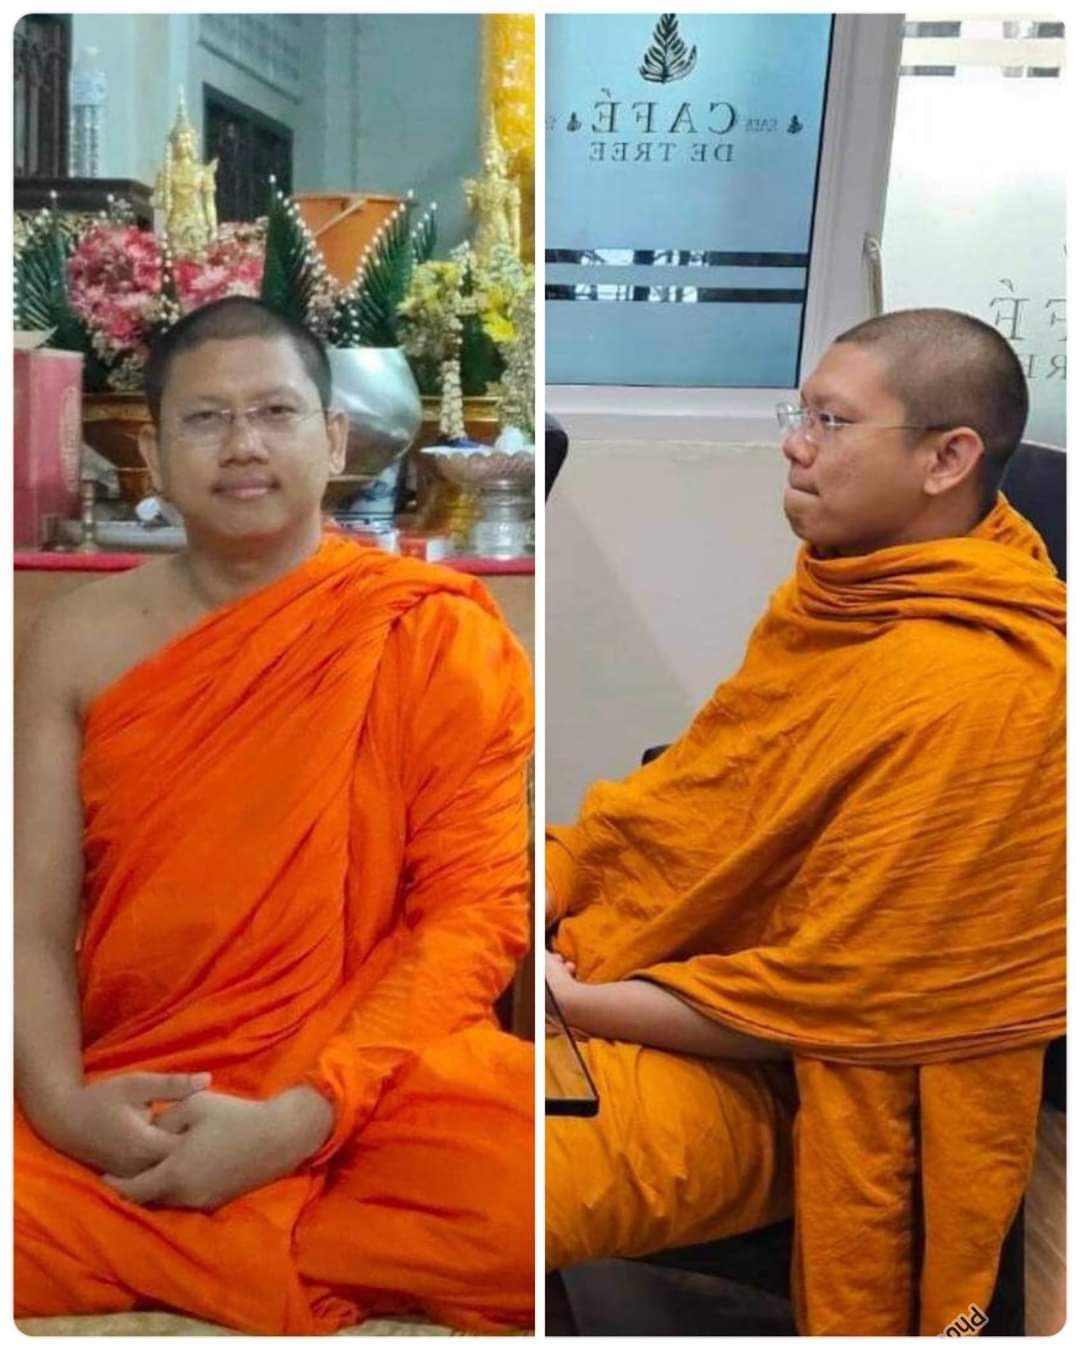 Thai politician affair with monk